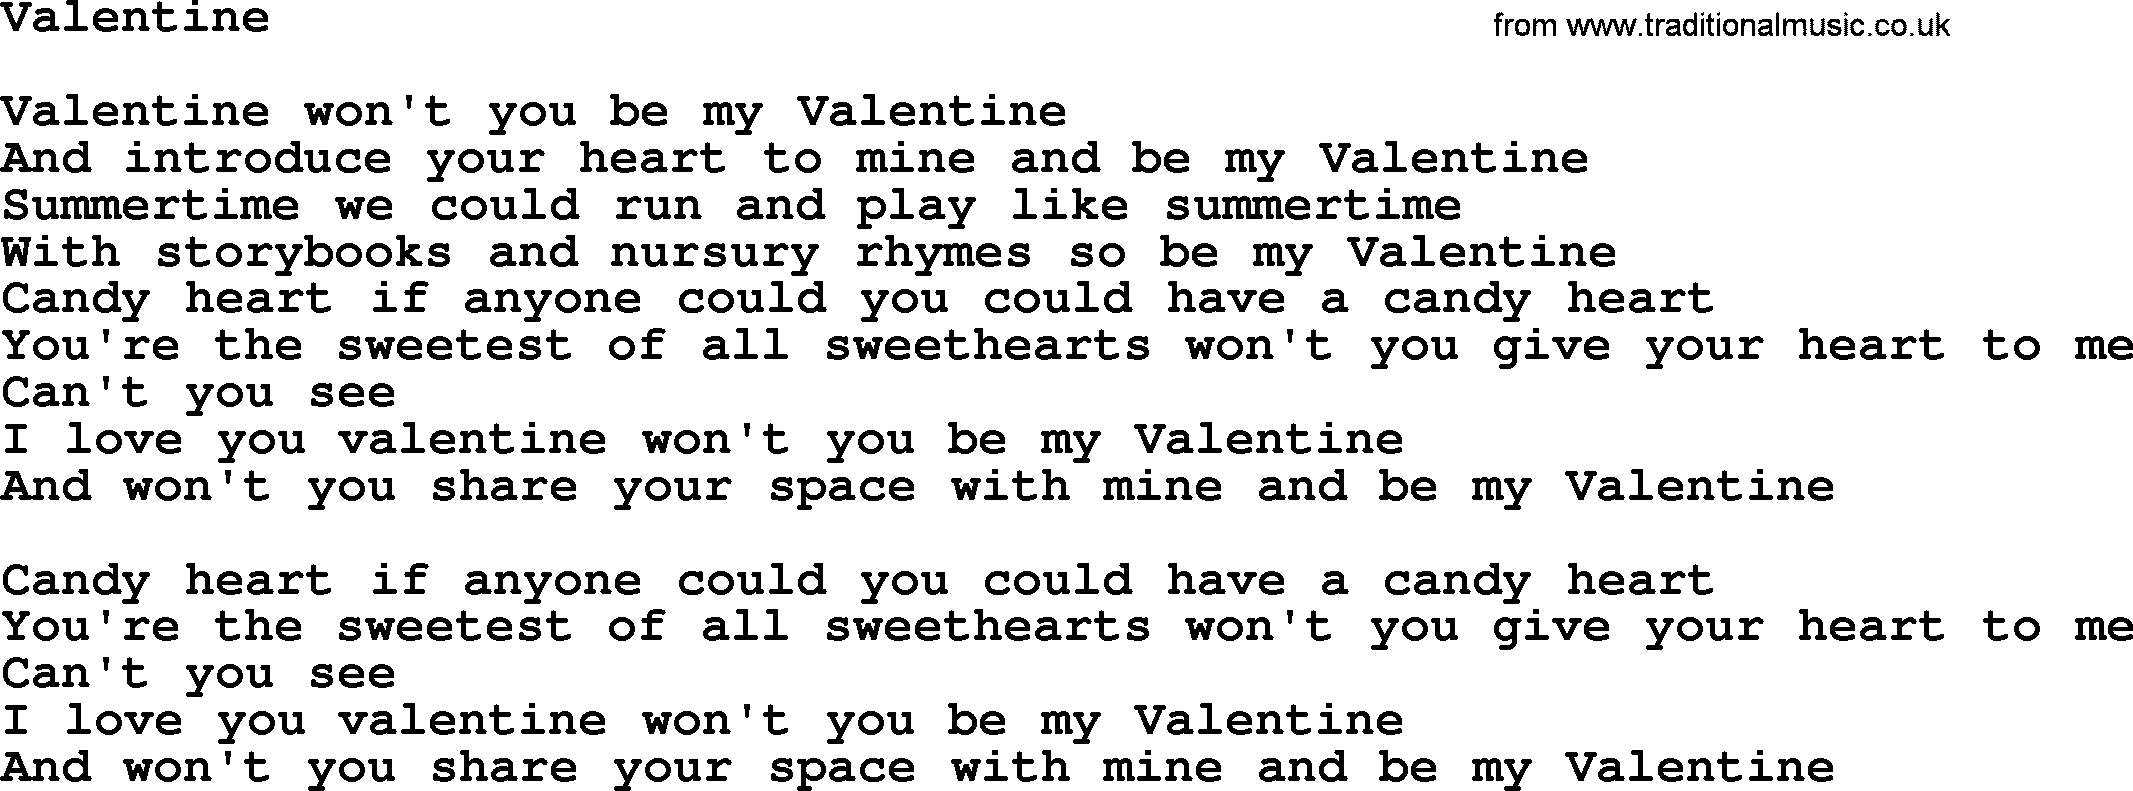 Willie Nelson song: Valentine lyrics